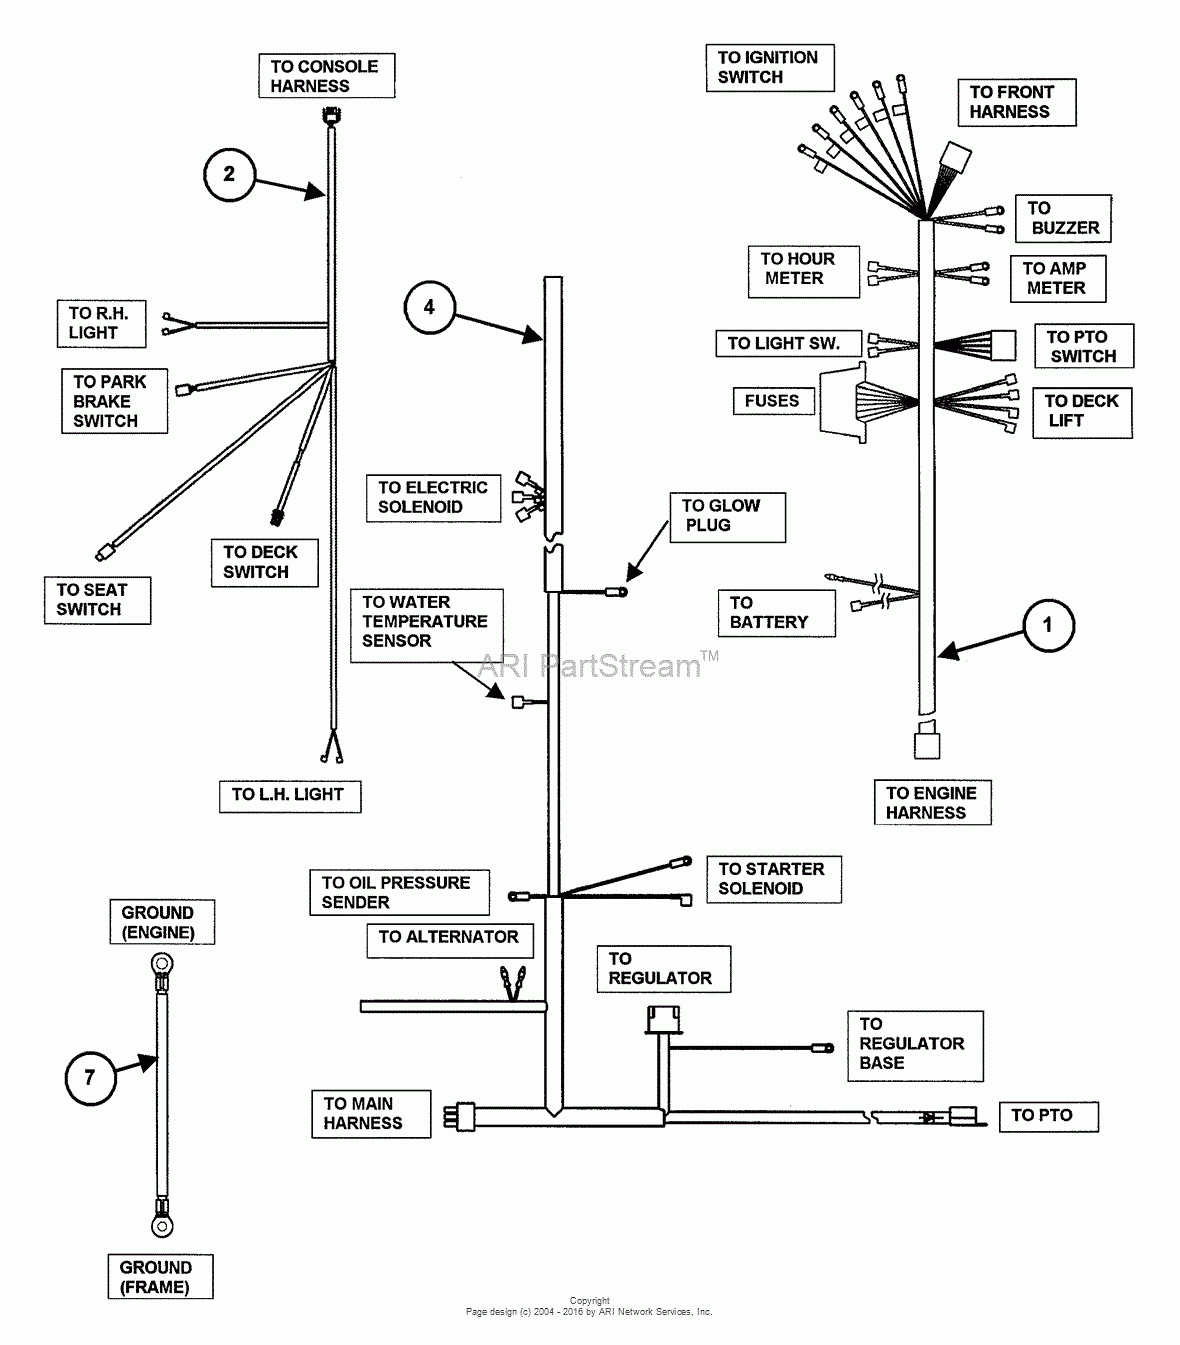 Kubota B7800 Engine Diagram - Data Wiring Diagram Today - Kubota B7800 Wiring Diagram